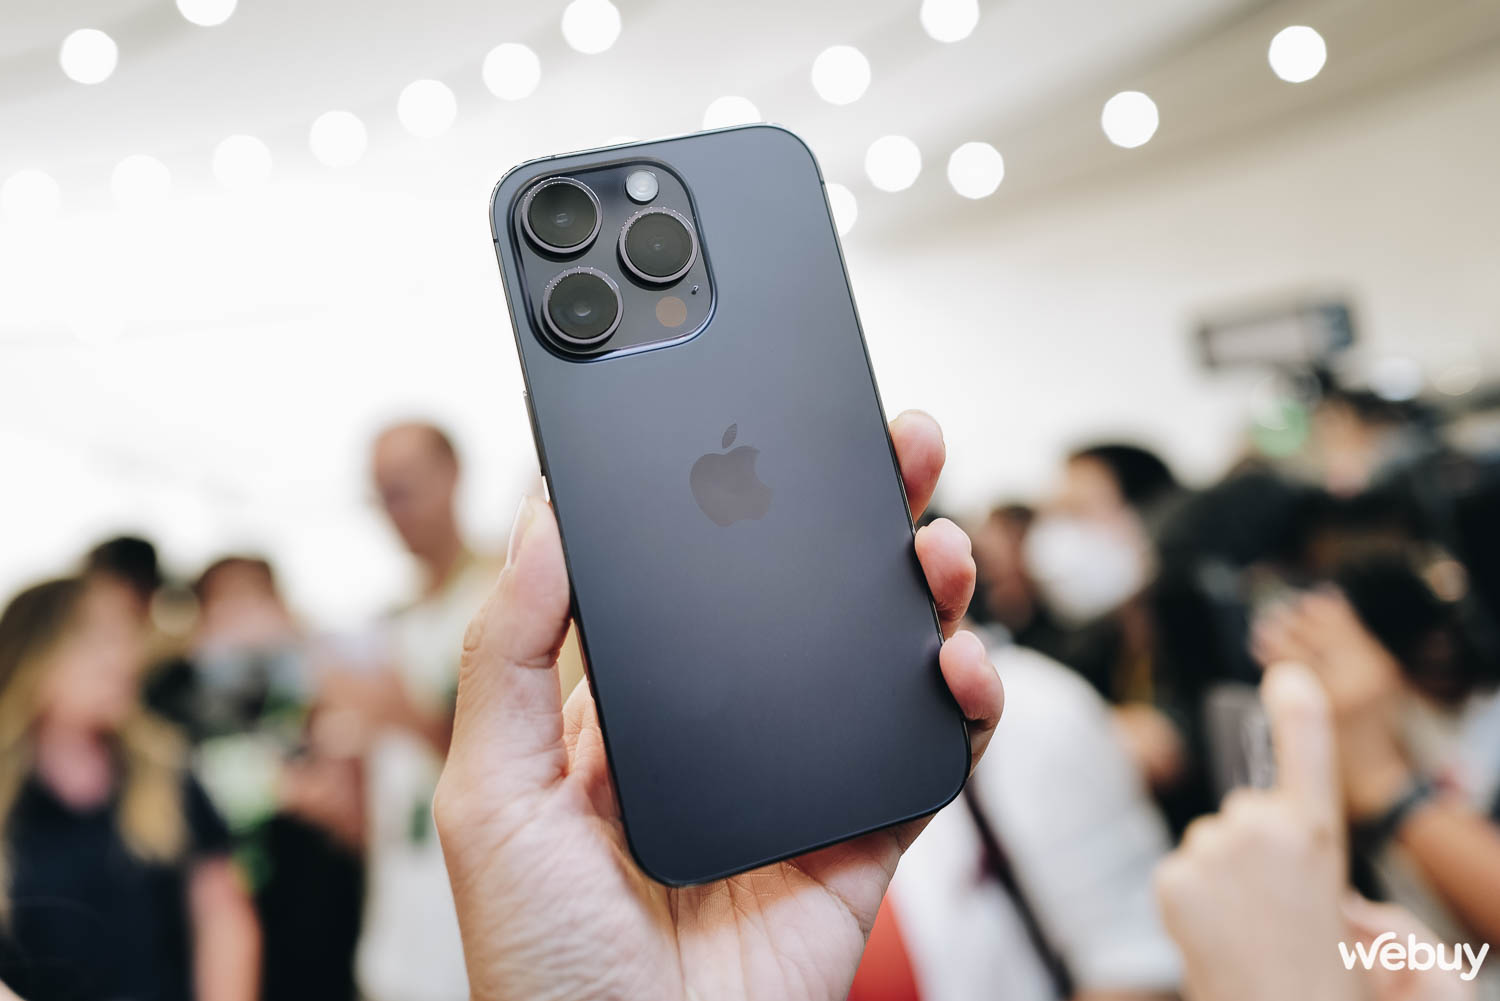 Cận cảnh iPhone 14 Pro tại sự kiện Apple: Thiết kế 'Dynamic Island', màu tím mới, loại bỏ khay SIM, giá không đổi - Ảnh 1.